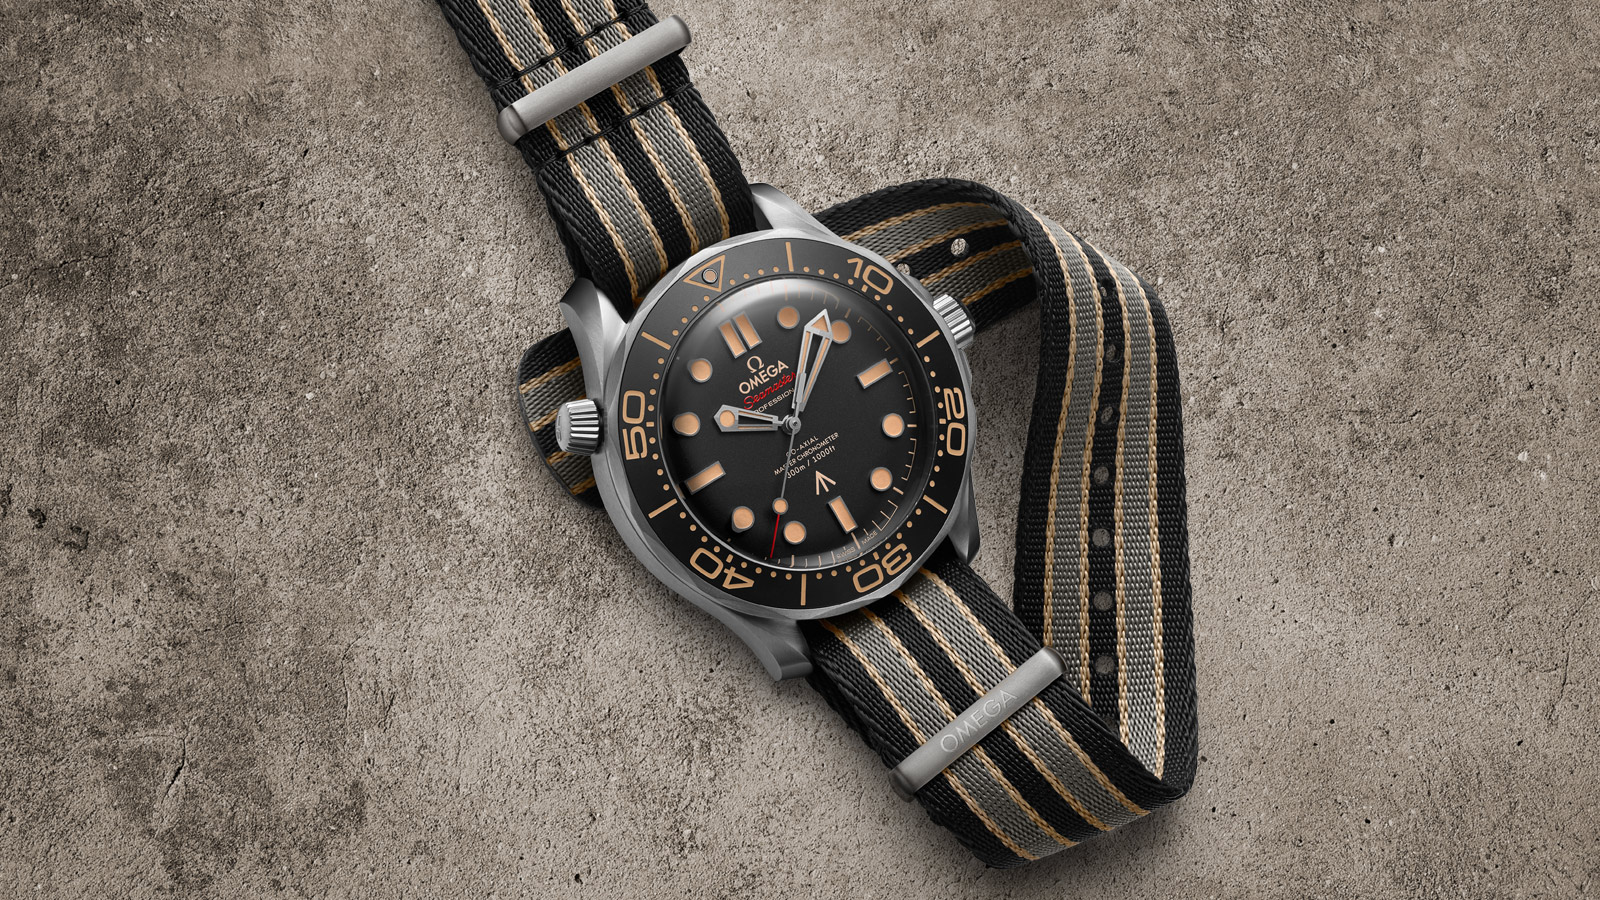 Seamaster Diver 300M 007 Edition - Slide 3 - 82299